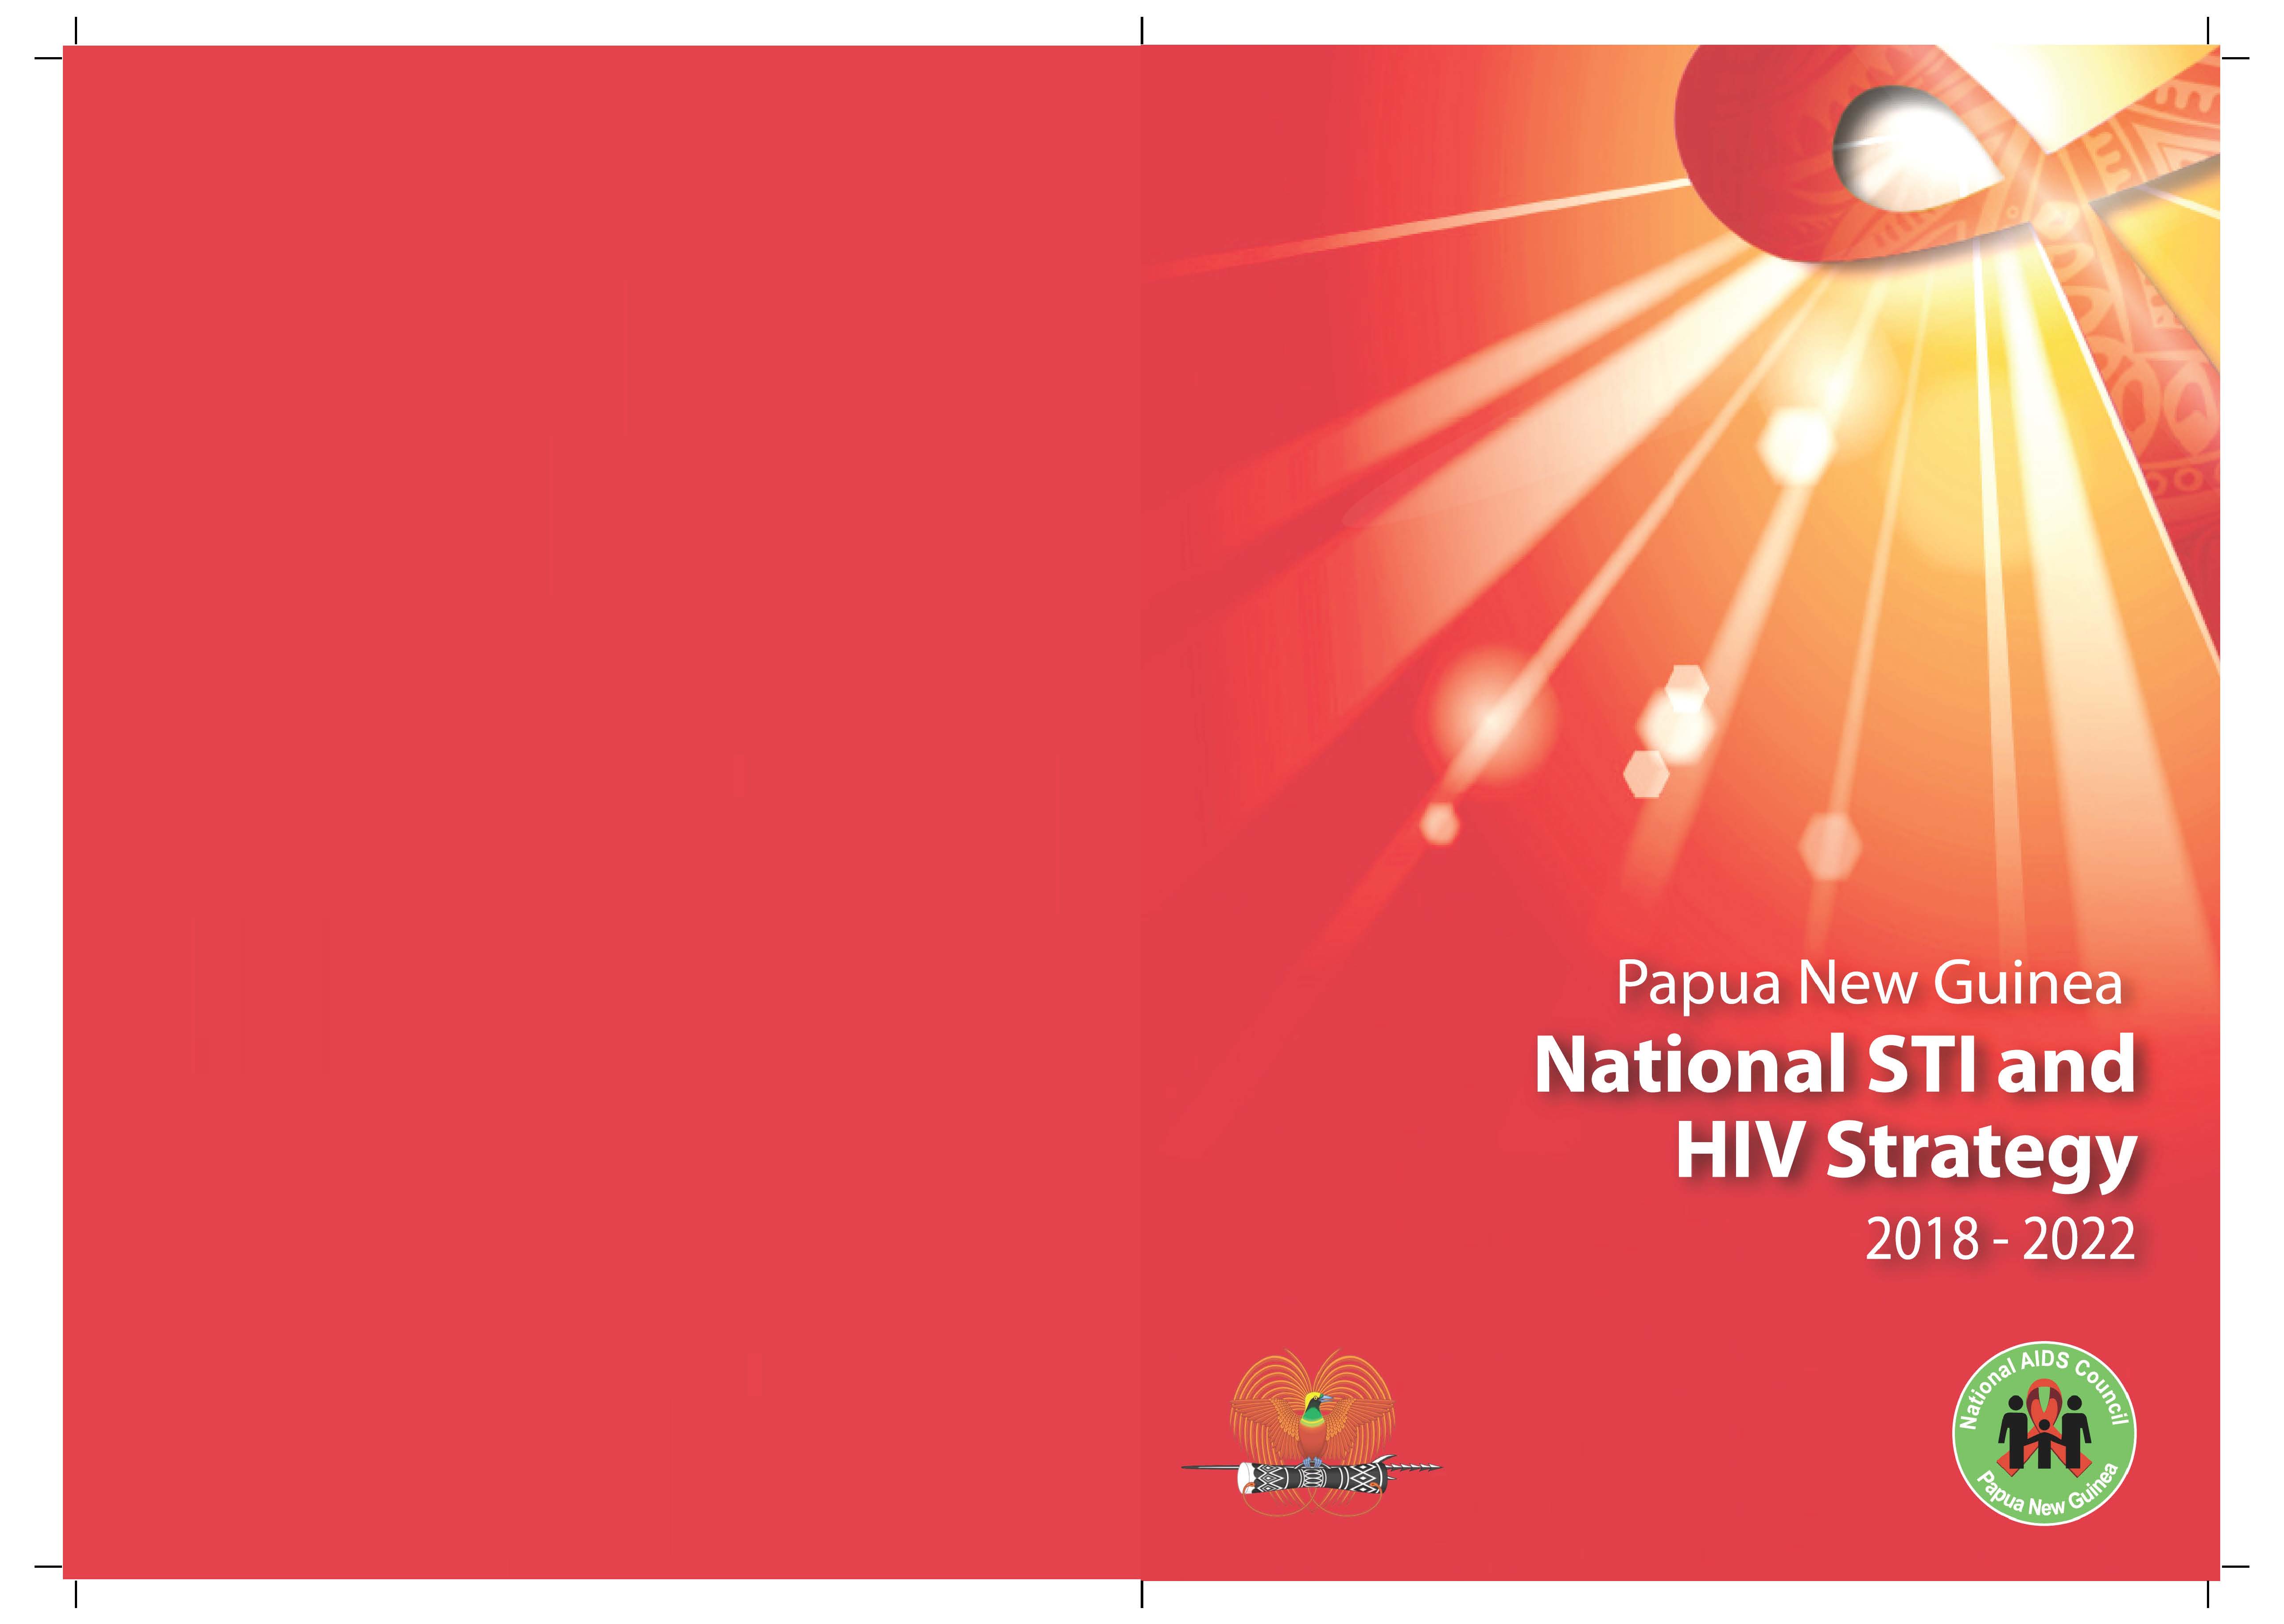 Stratégie nationale de lutte contre les IST et le VIH en Papouasie-Nouvelle-Guinée 2018-2022 